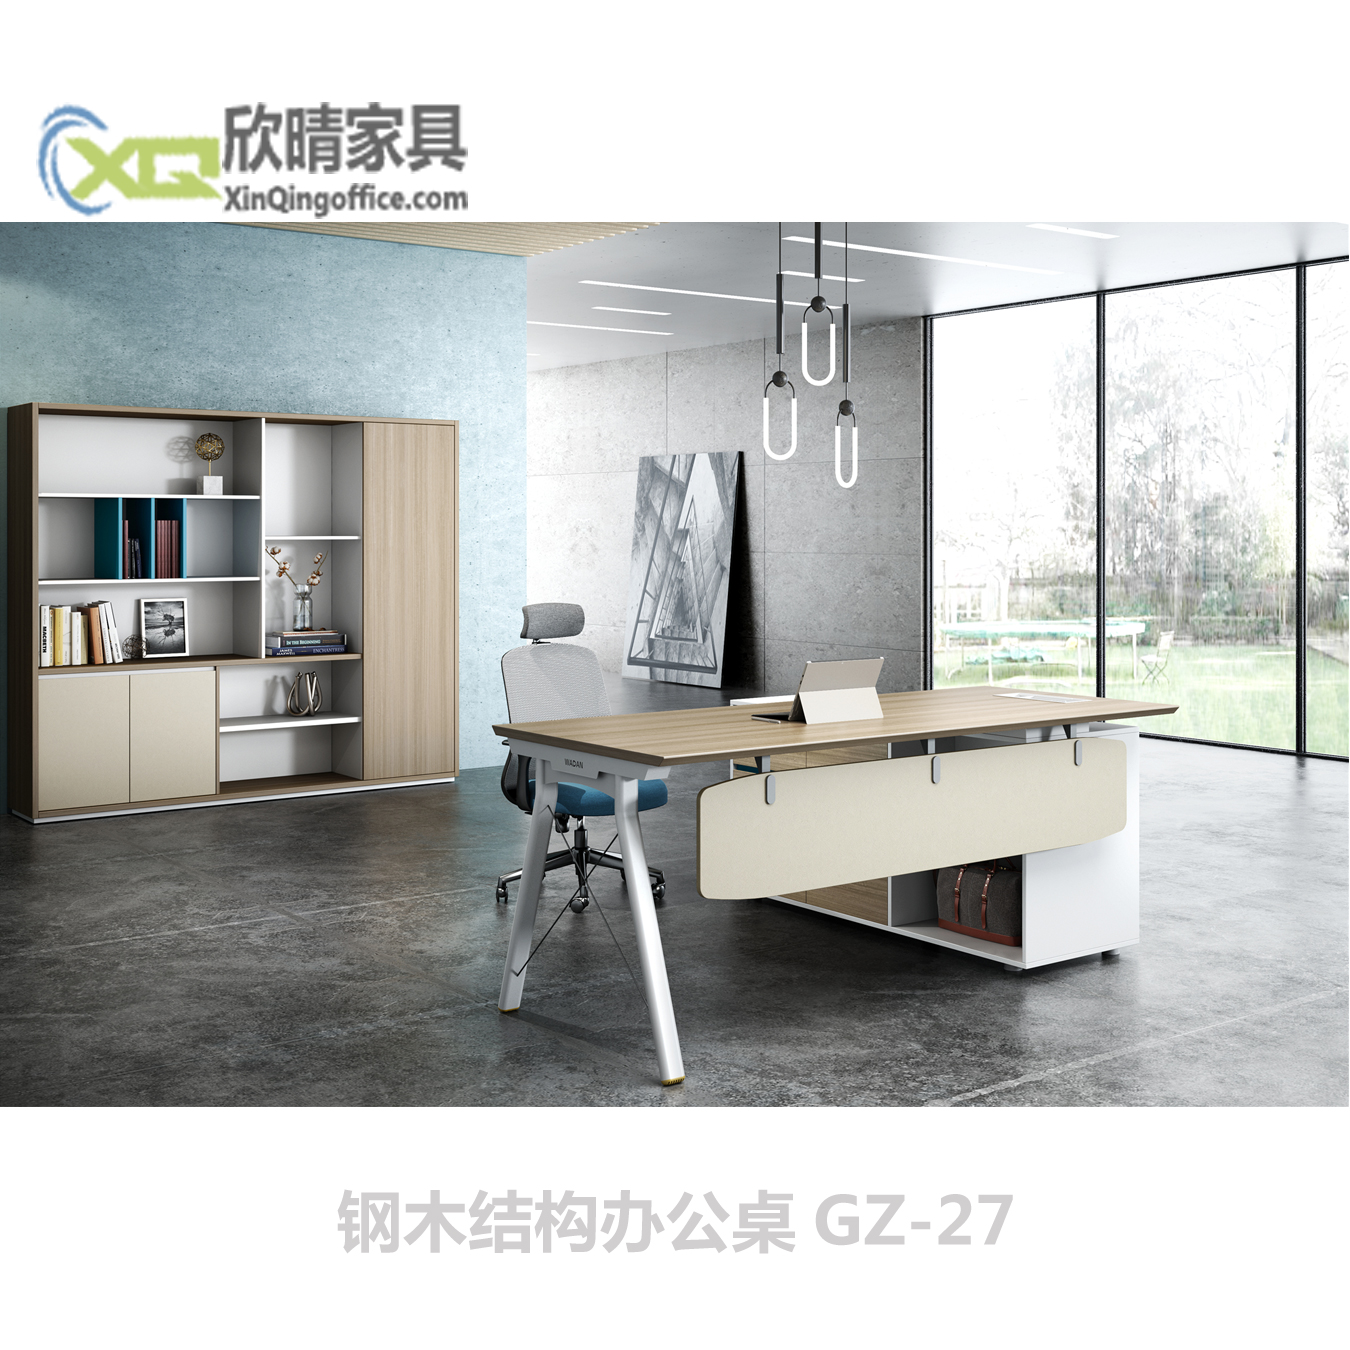 钢木结构办公桌-钢木结构办公桌GZ-27产品介绍